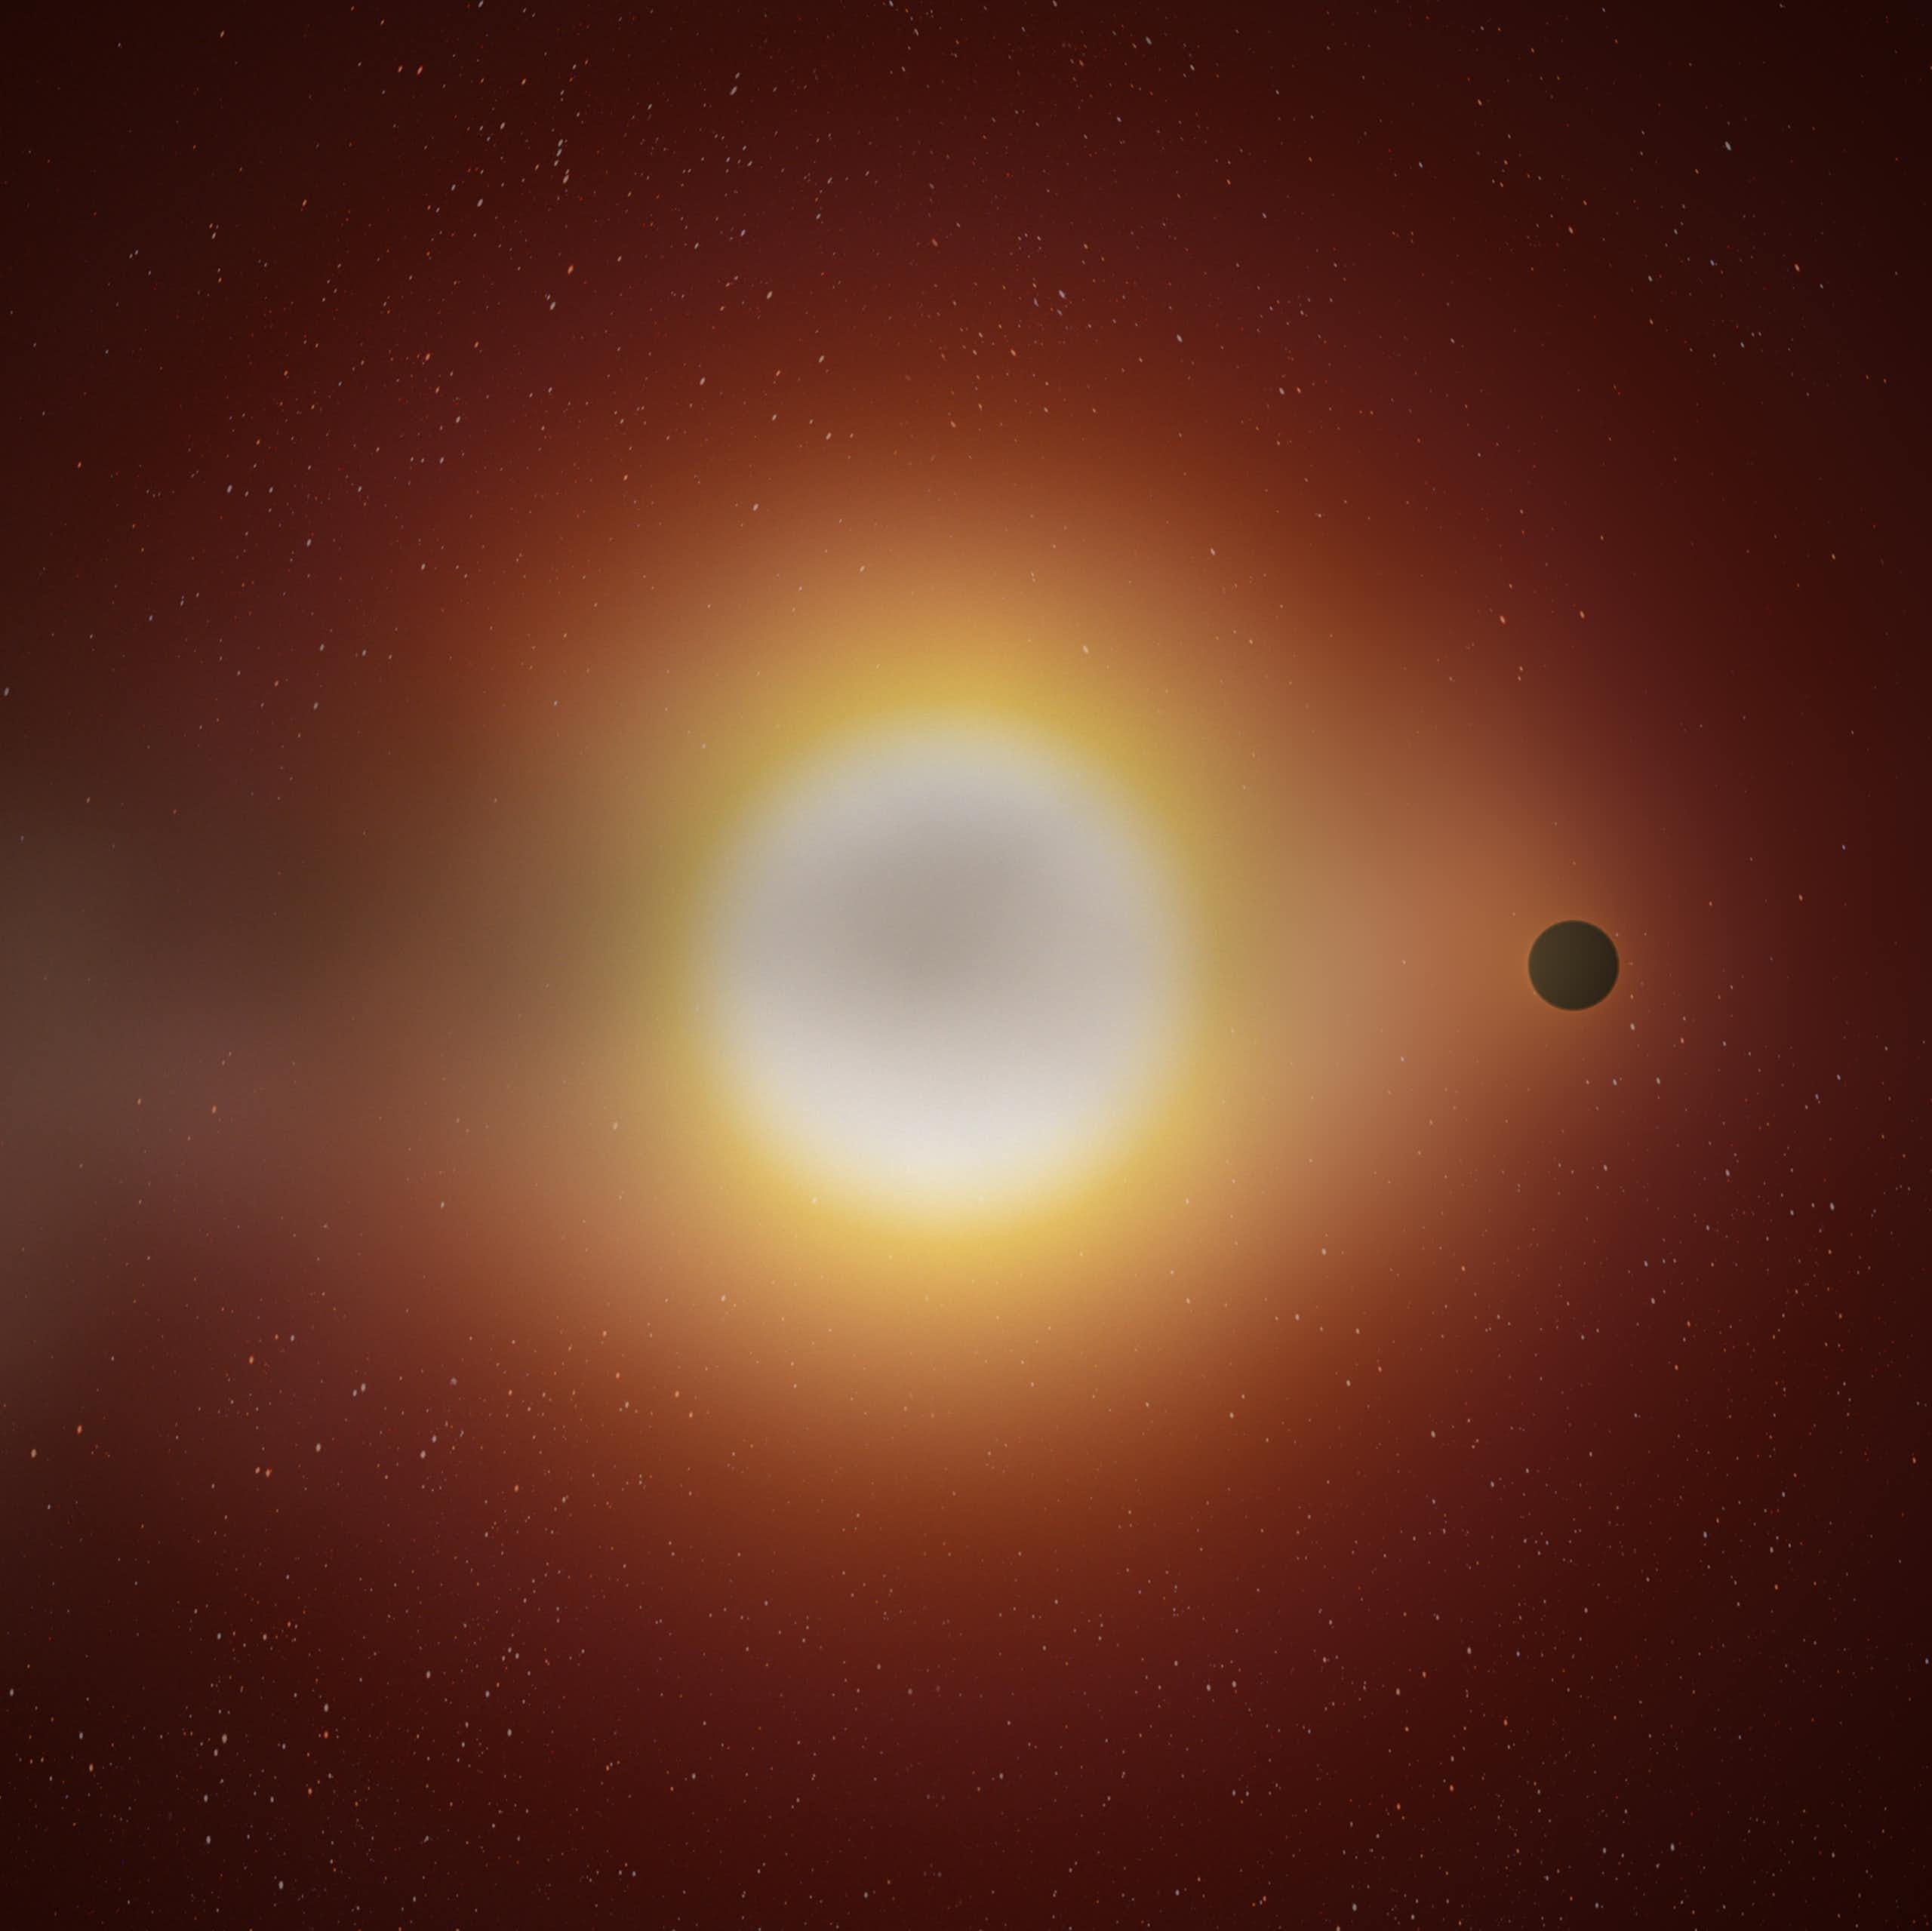 Ilustração de um pequeno planeta que orbita em torno de um sol.